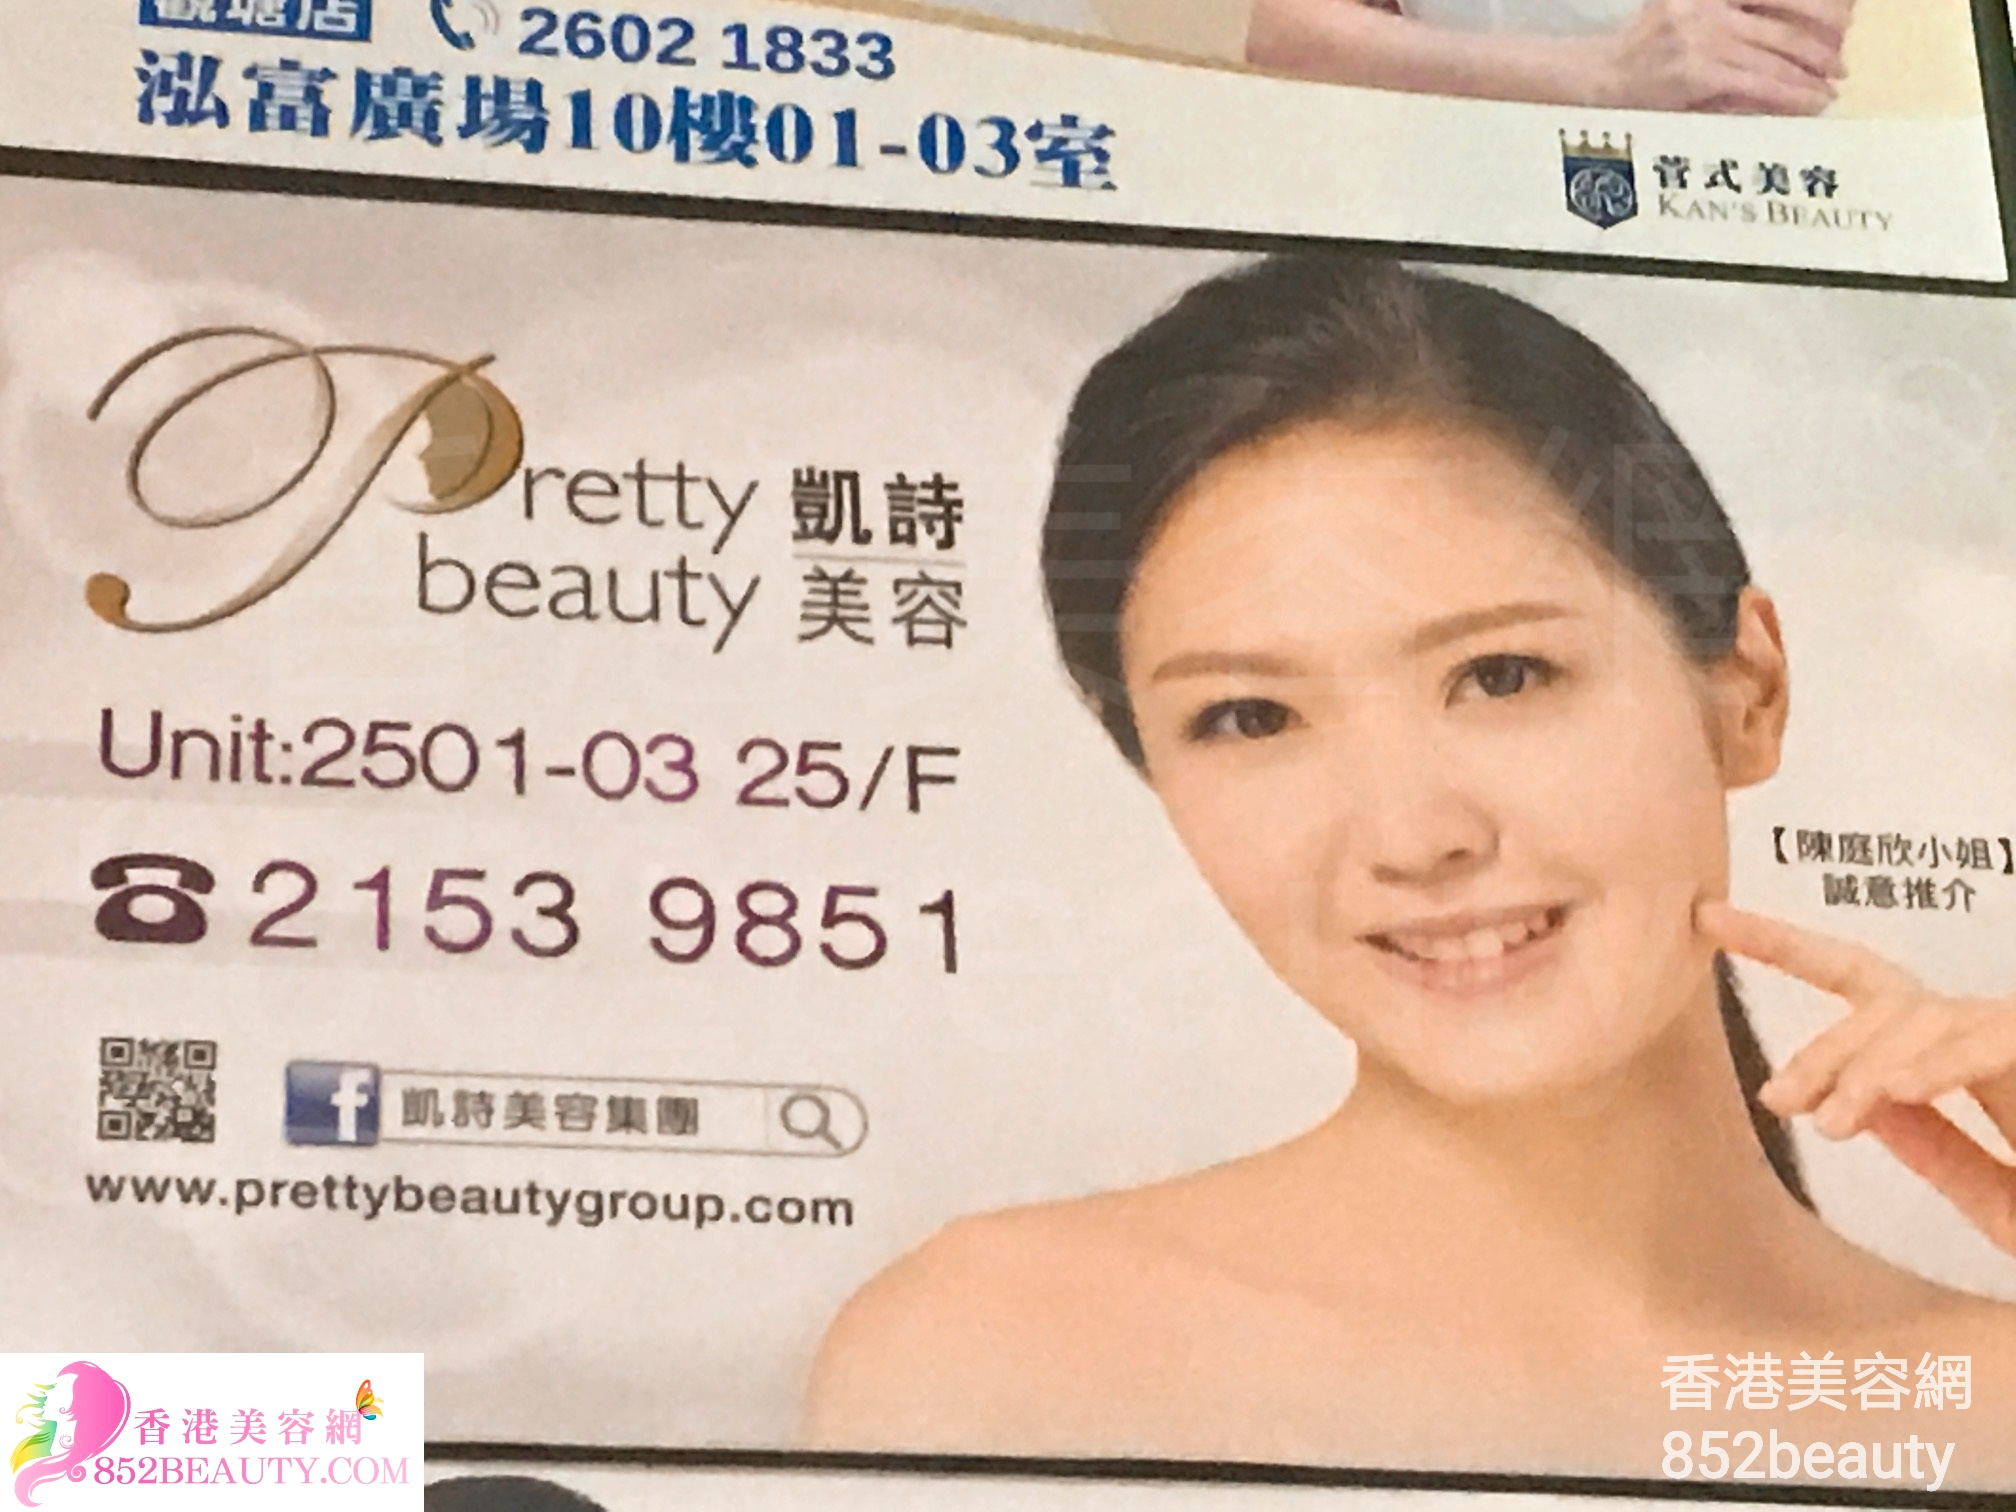 香港美容網 Hong Kong Beauty Salon 美容院 / 美容師: Pretty beauty 凱詩美容 (觀塘店)